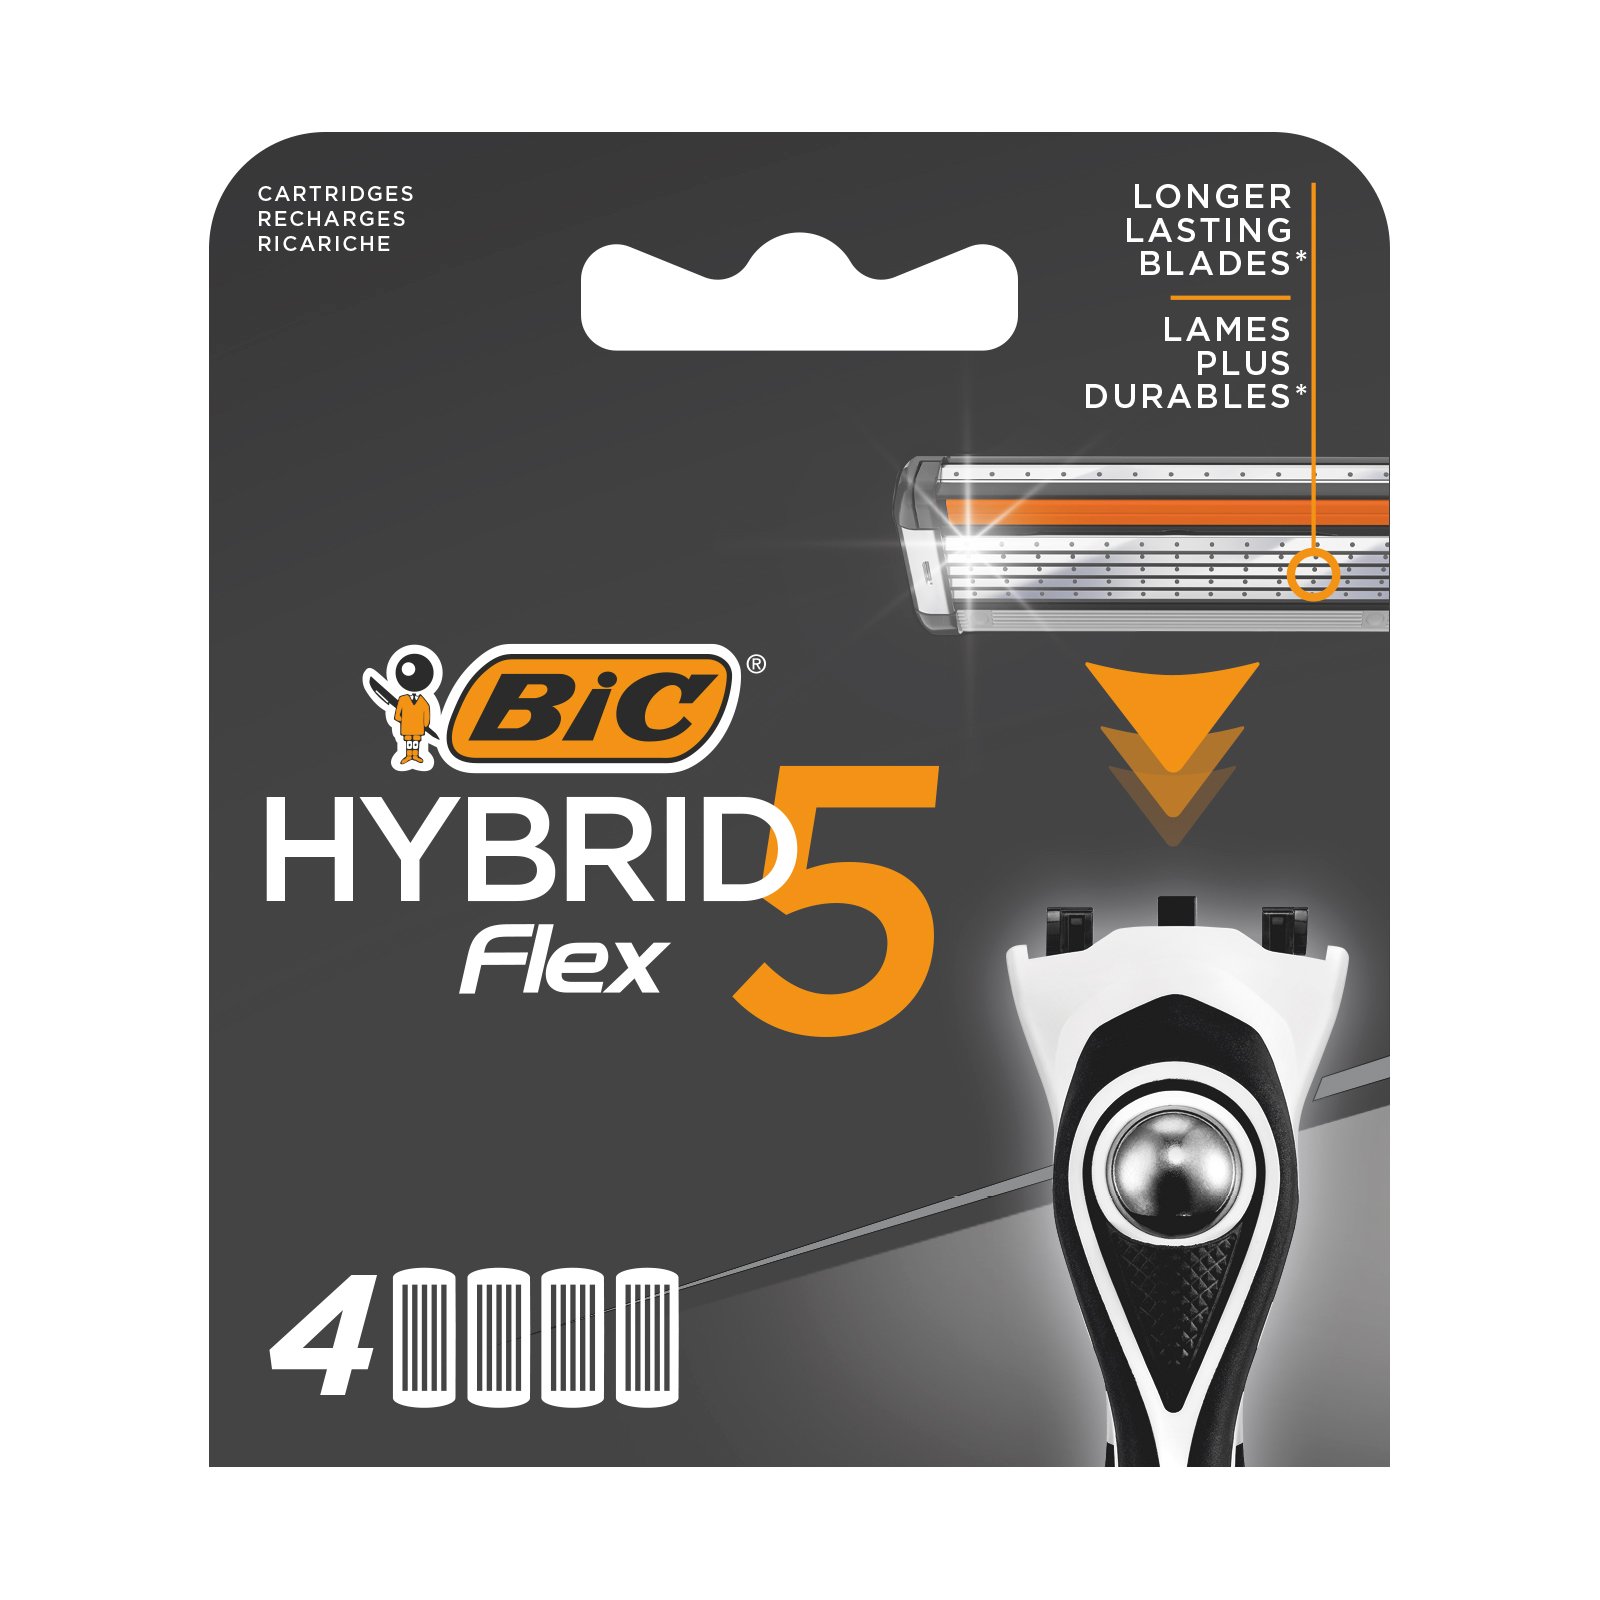 Сменные картриджи для бритья BIC Hybrid 5 Flex, 4 шт. - фото 1